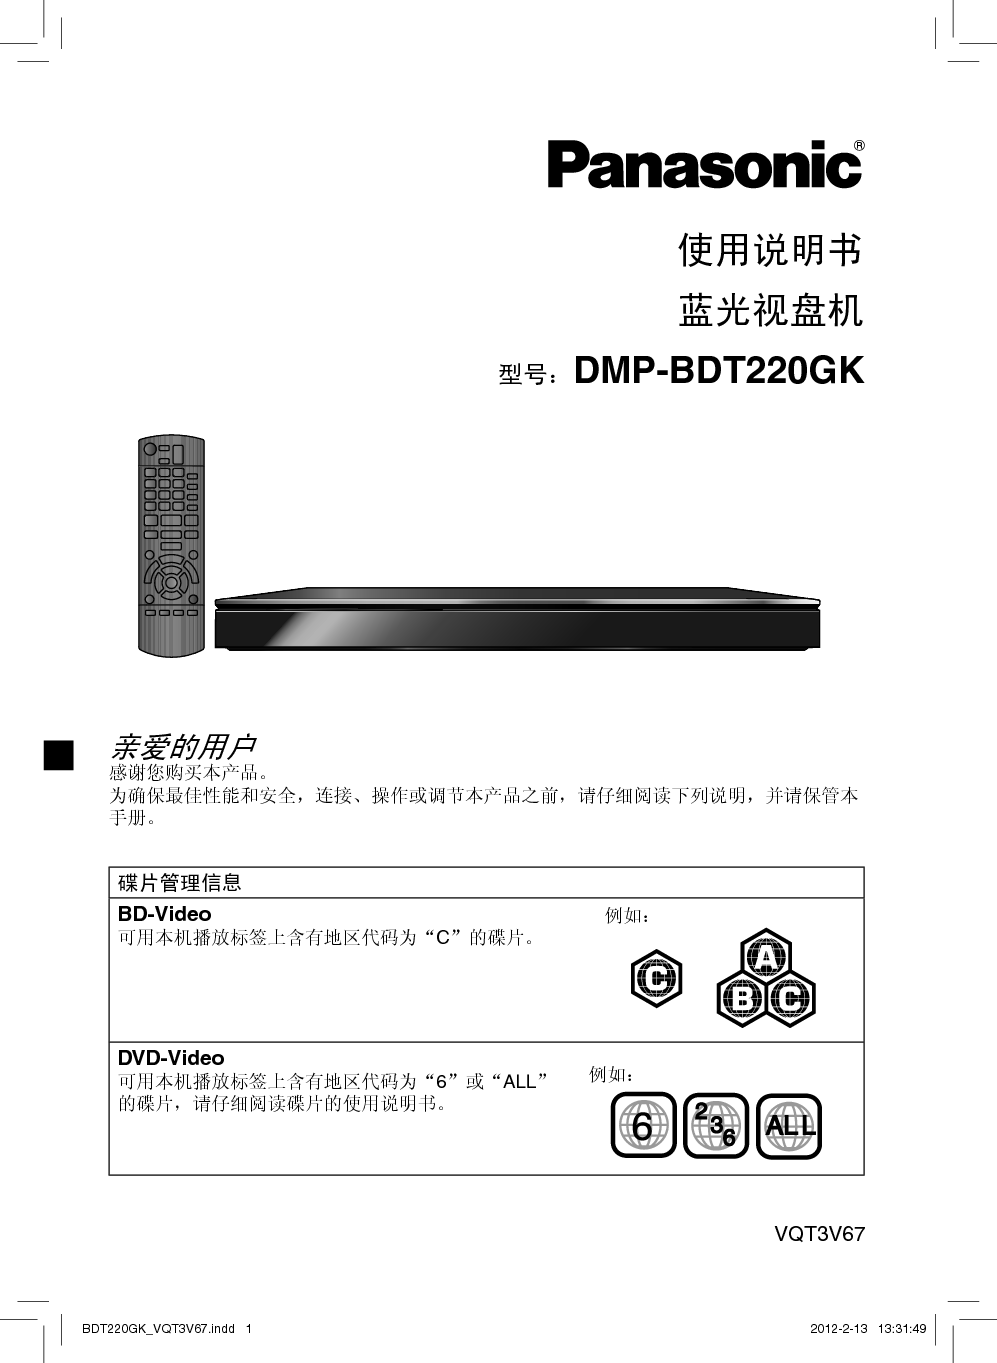 松下 Panasonic DMP-BDT220GK 说明书 封面